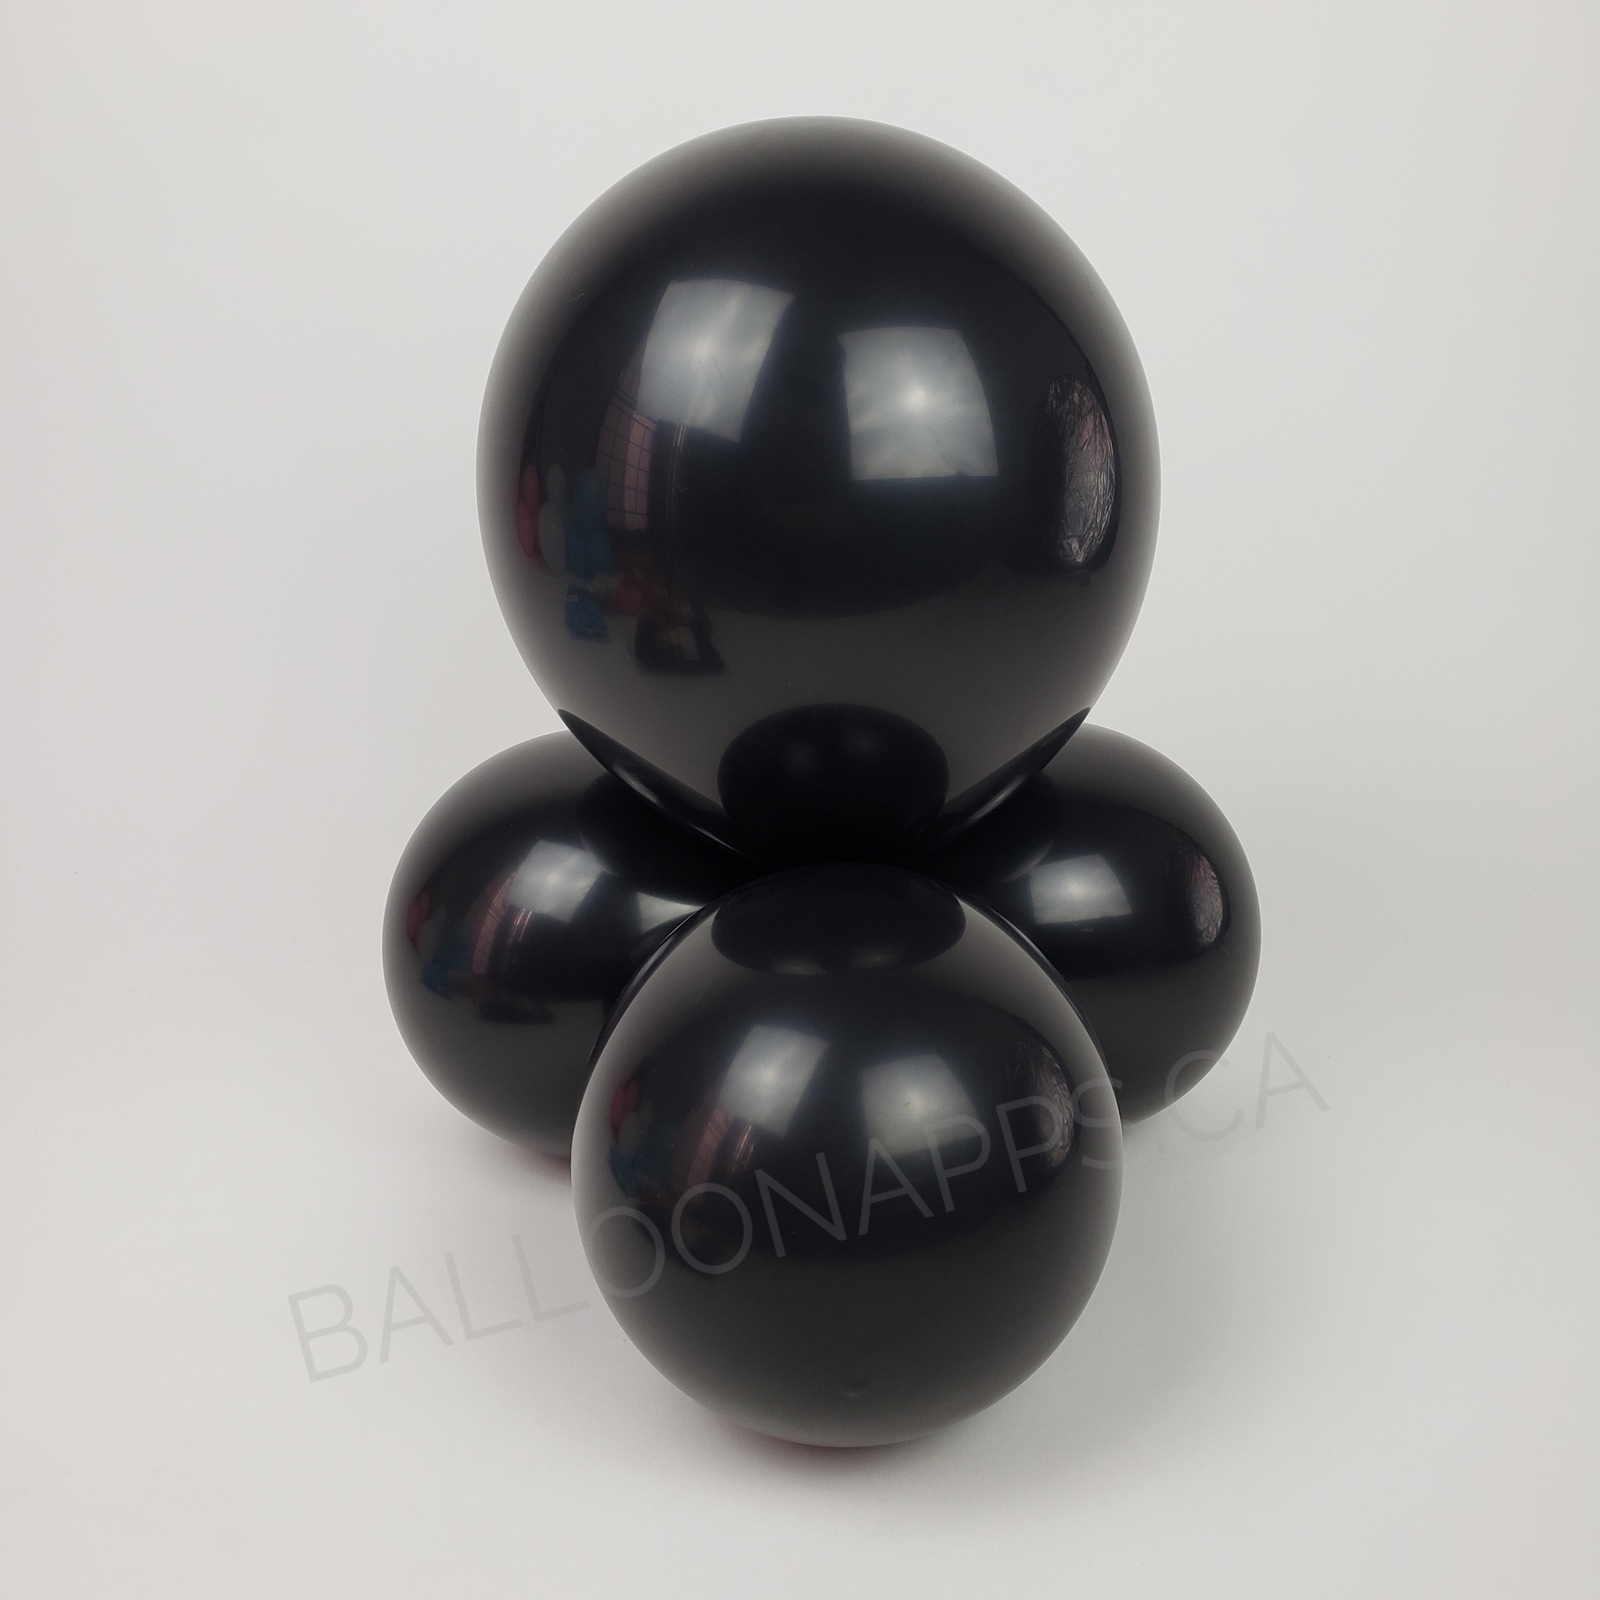 balloon texture TUFTEX (50) 5